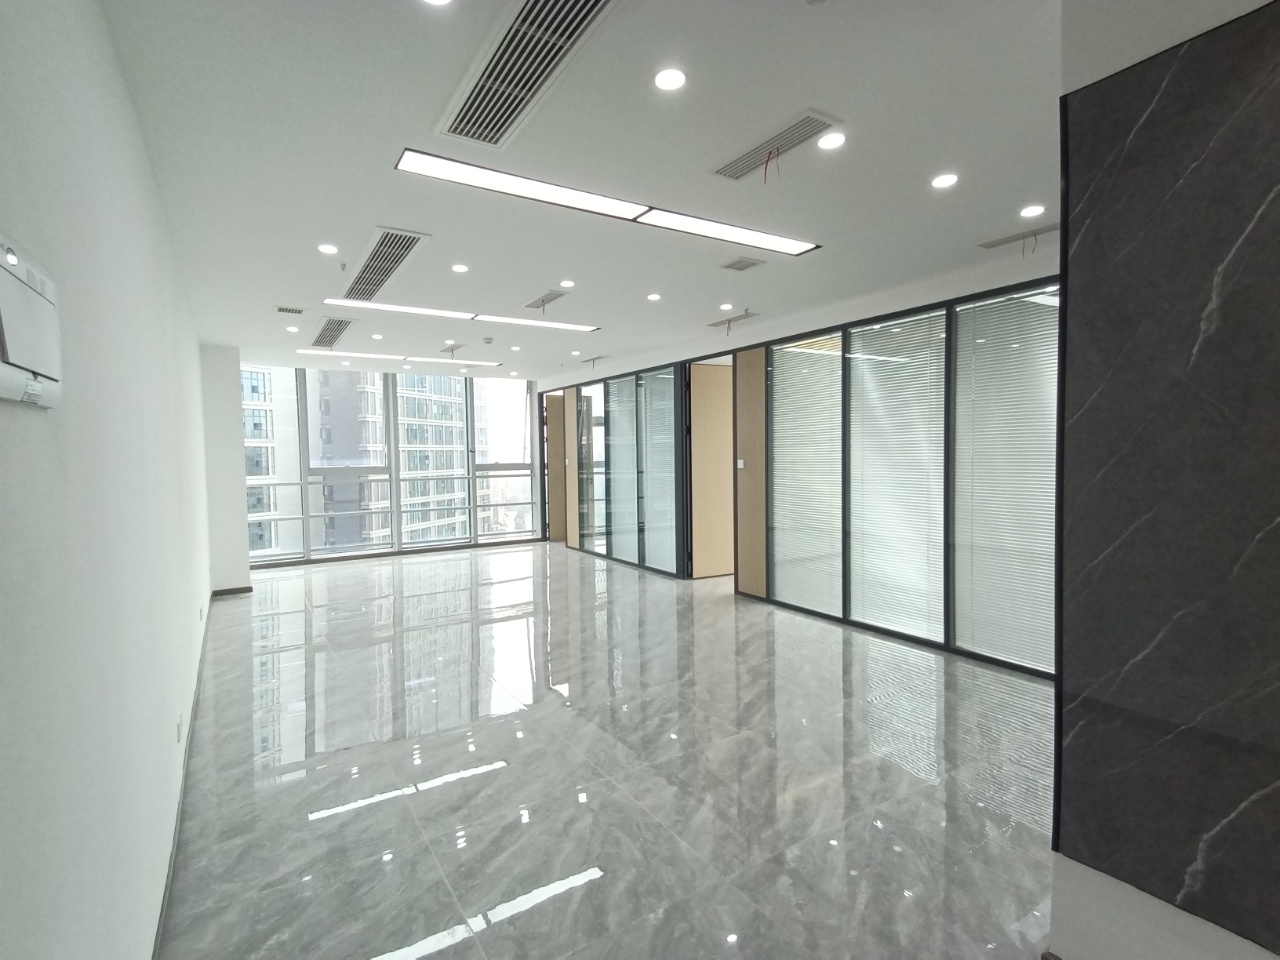 【精品】奥园广场151平米丨大纵深户型办公空间丨玻璃隔断采光通透